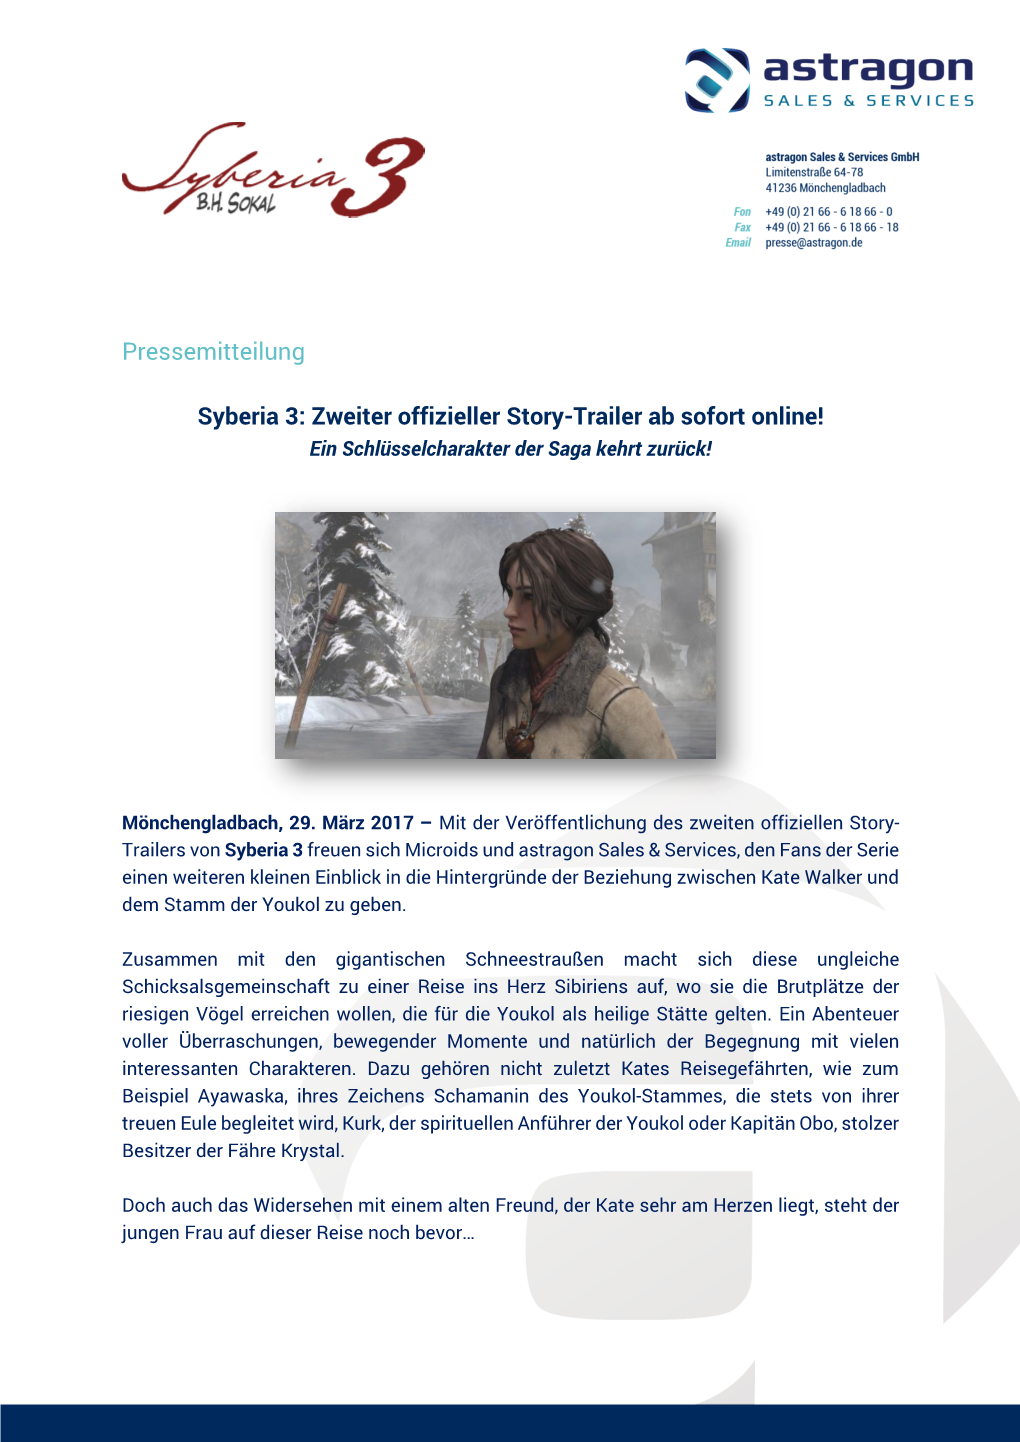 Pressemitteilung Syberia 3: Zweiter Offizieller Story-Trailer Ab Sofort